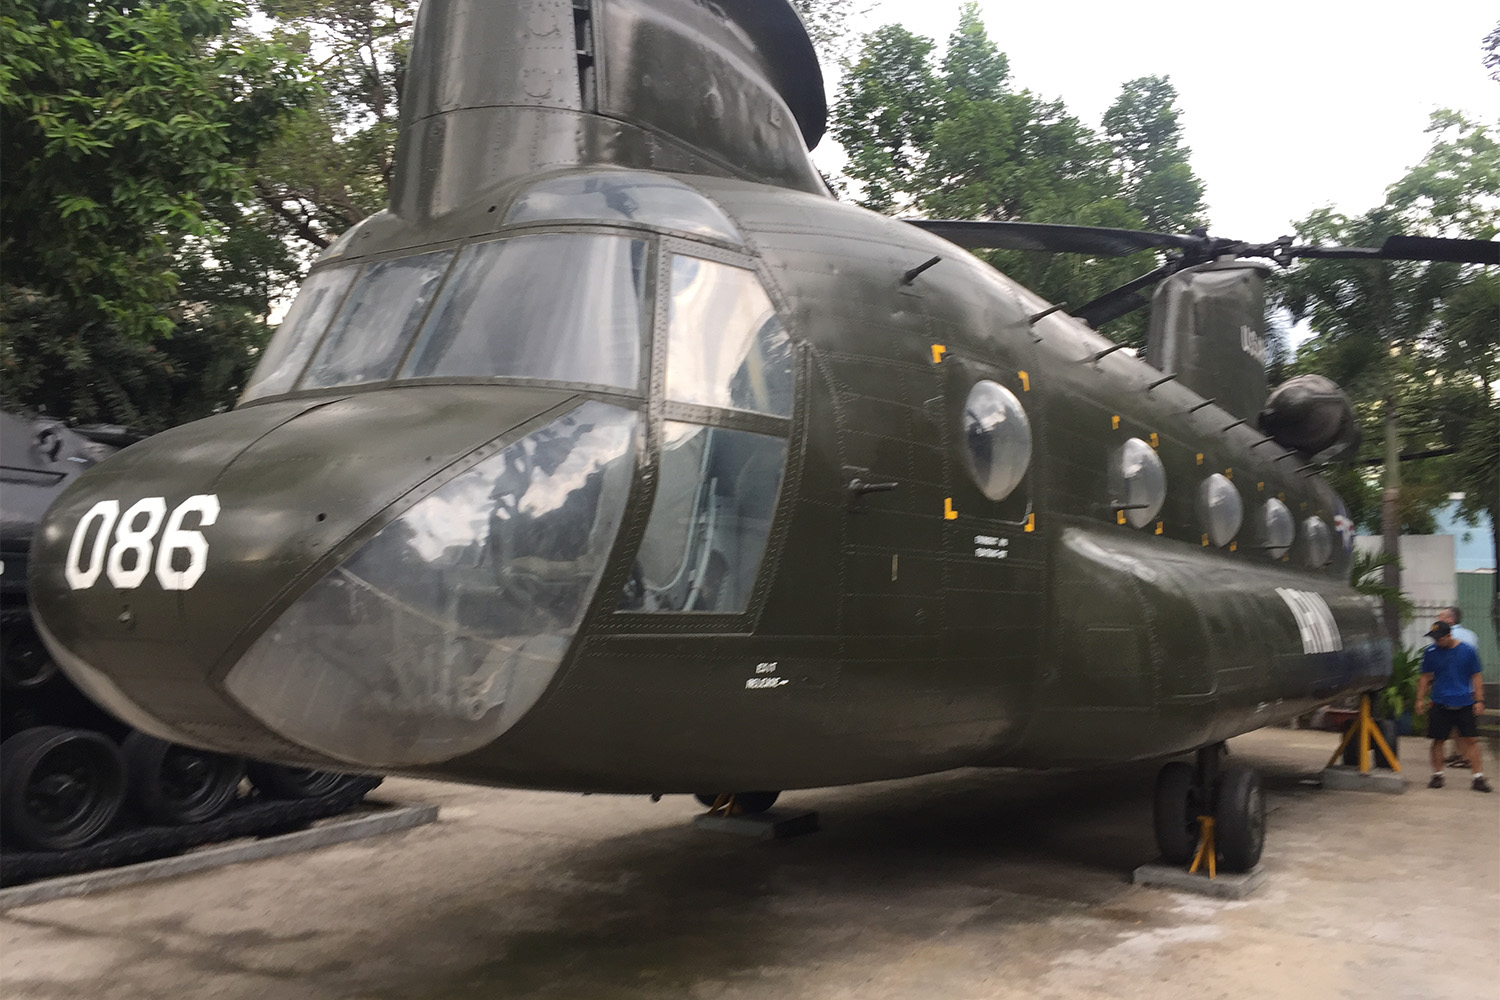 Des avions militaires américains utilisés pendant la guerre du Vietnam dans les années 70 sont exposés en dehors du musée des vestiges de la guerre de Saigon.